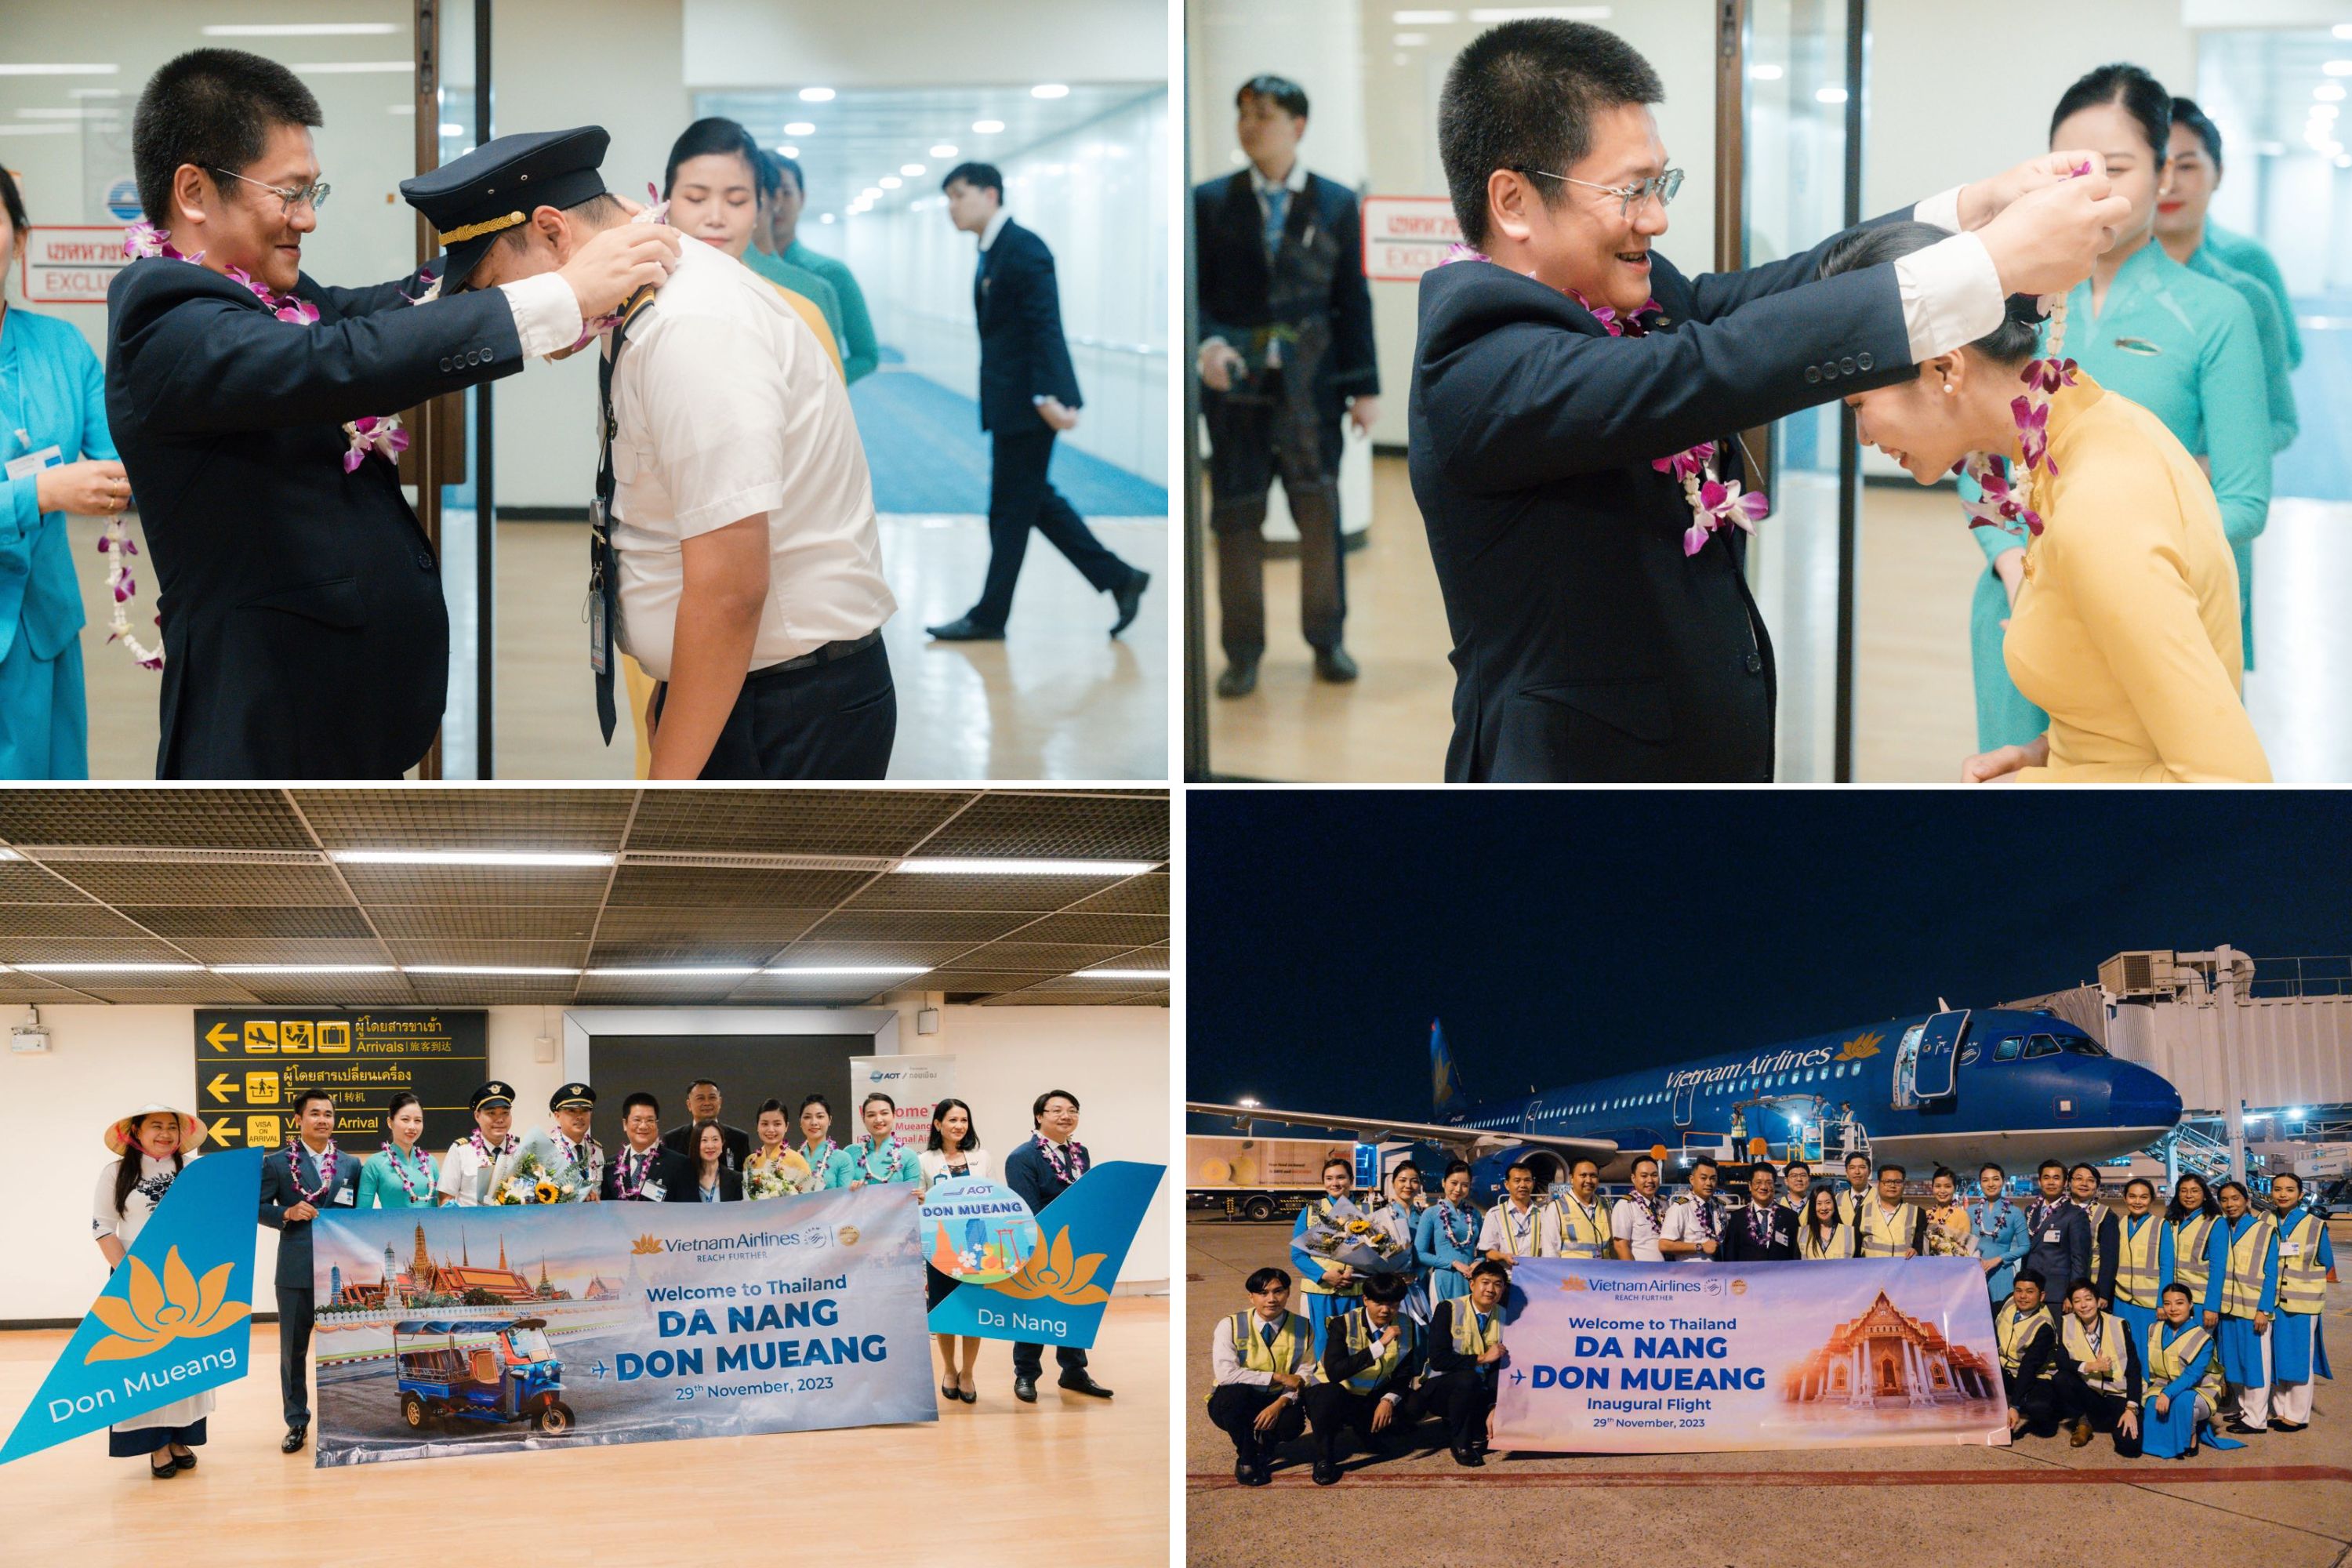 Vietnam Airlines khai trương đường bay Đà Nẵng – Đôn Mường – Spirit Vietnam  Airlines